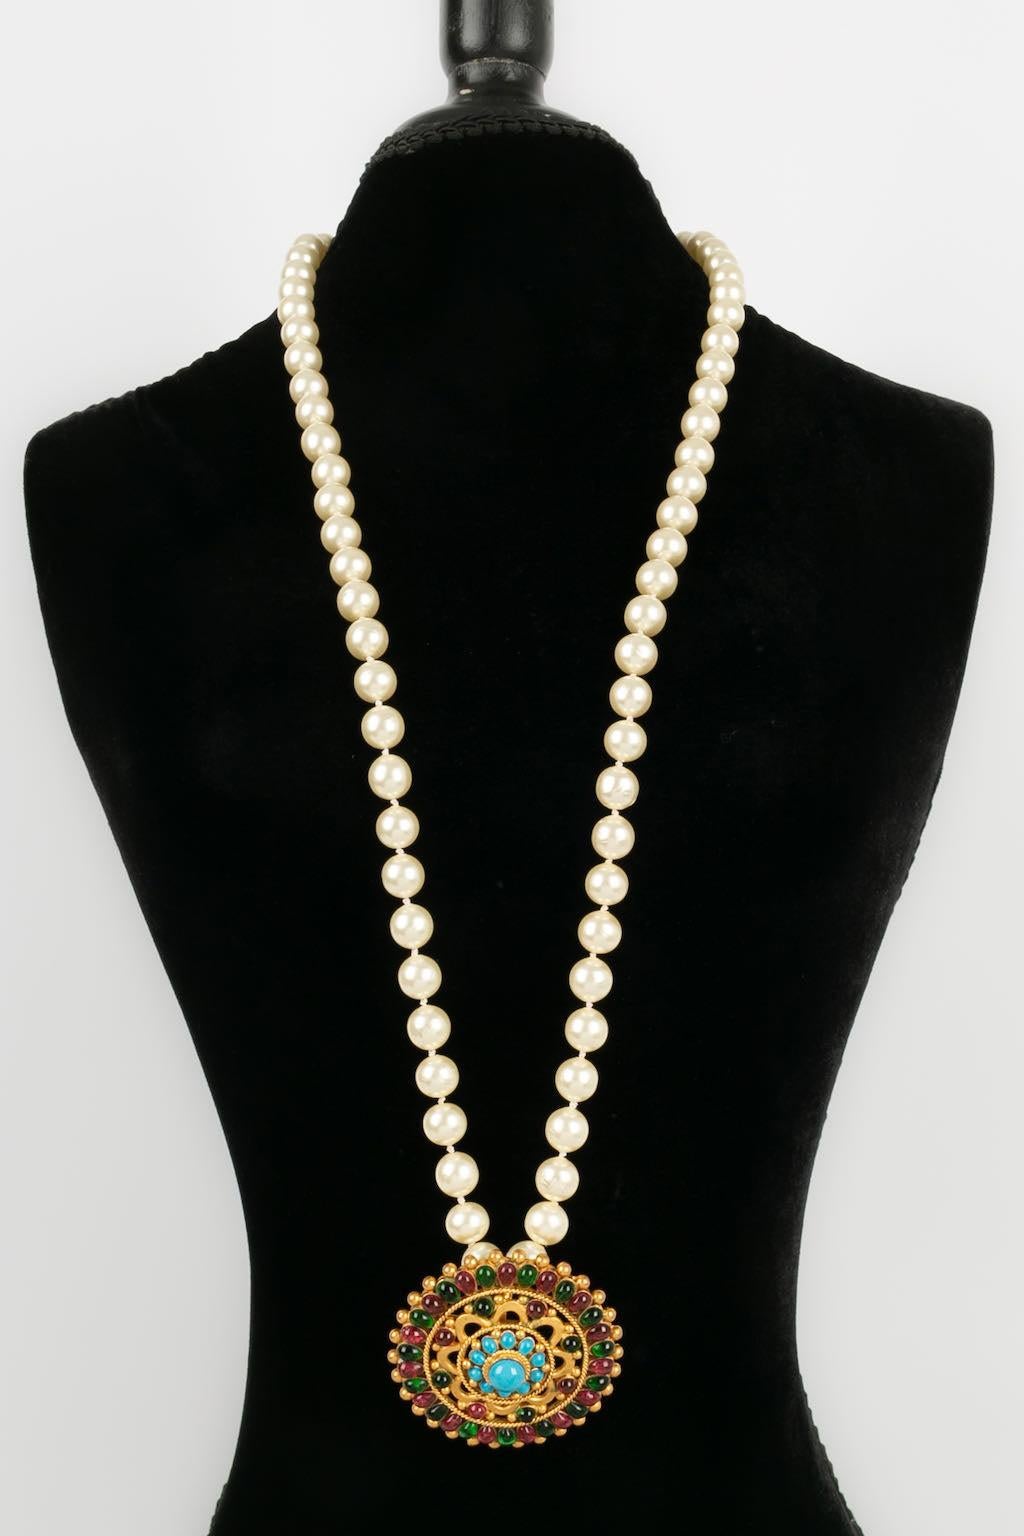 Chanel -(Made in France) Halskette mit Perlen und einer Brosche aus Goldmetall und Glaspaste. Kollektion Herbst/Winter 1996.

Zusätzliche Informationen: 
Abmessungen: Länge: 98 cm - Durchmesser: 6 cm
Zustand: Sehr guter Zustand
Sellers Ref-Nummer: